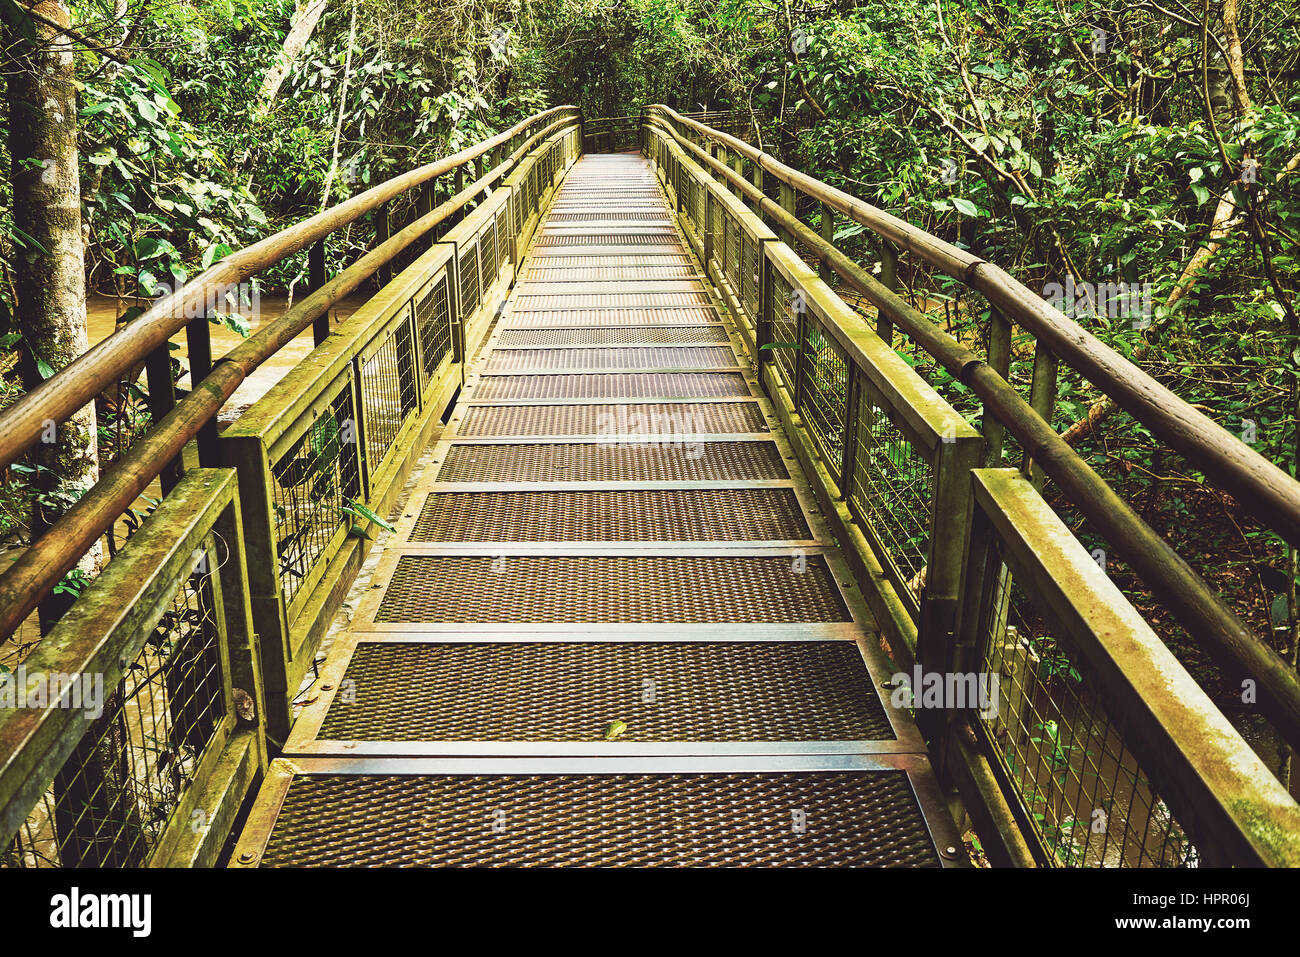 Gehweg in Dschungel Dschungel Regenwald, tropischen Wald mit Farn und üppiger Vegetation, Naturlehrpfad seitlich Argentinien Iguazu Falls Instagram Vintage Stockfoto